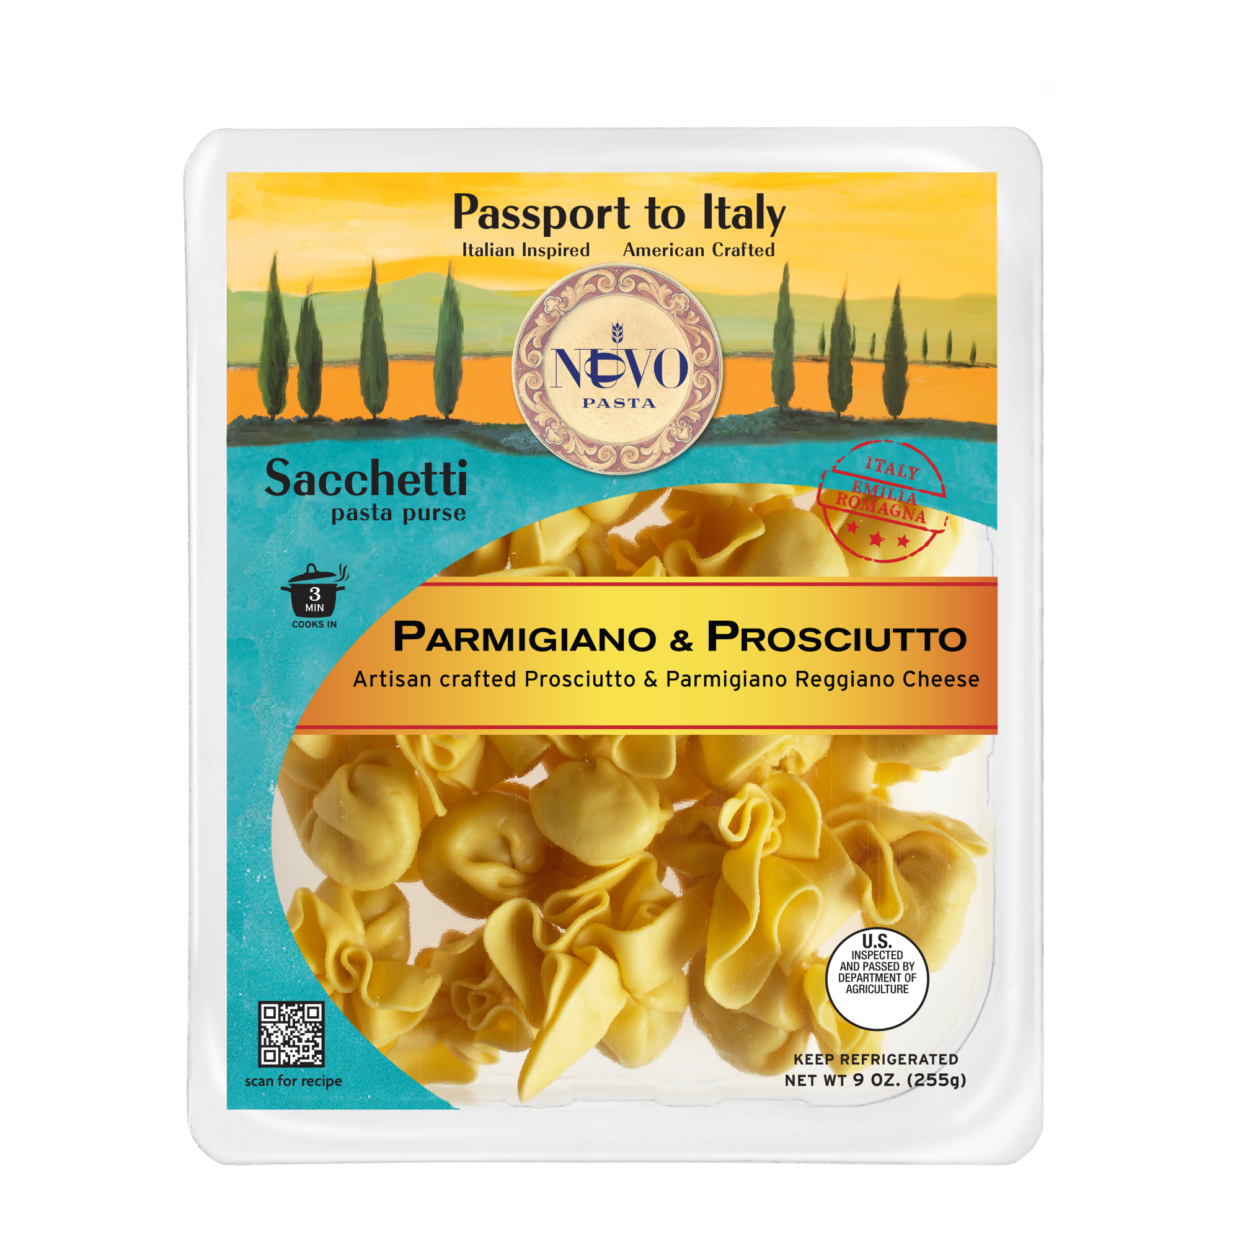 Parmigiano & Prosciutto